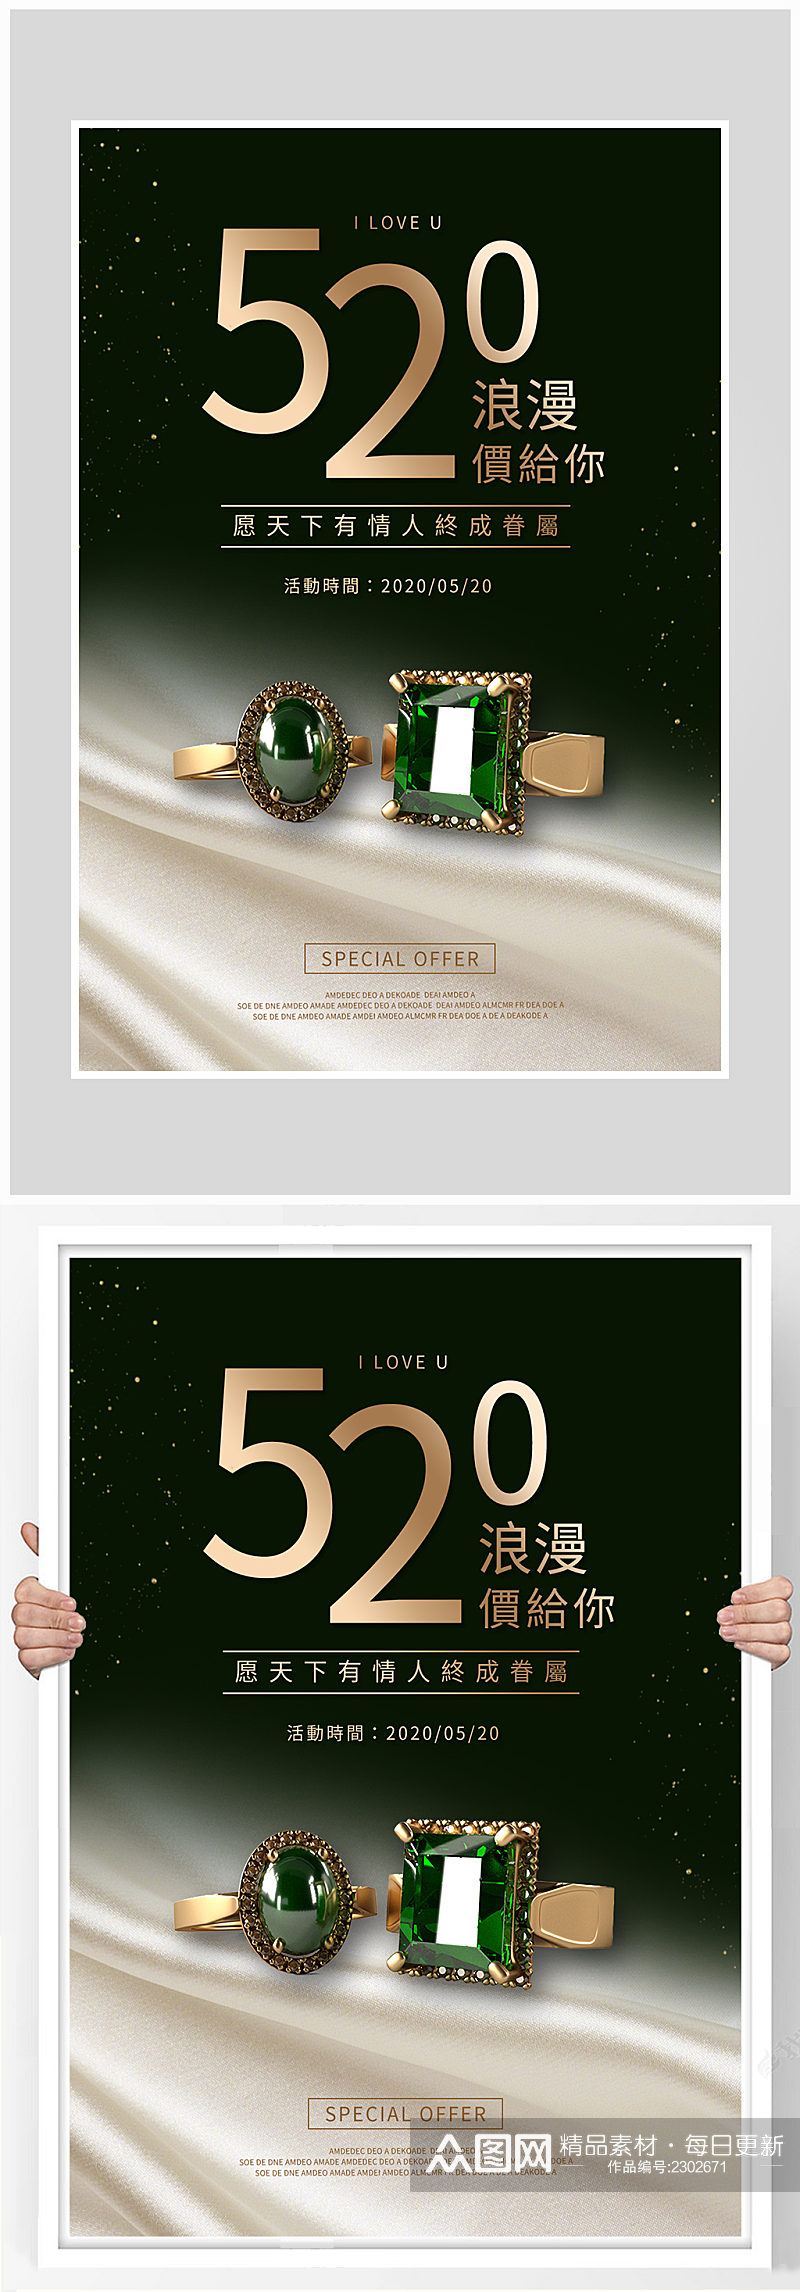 创意质感520情人节爱情海报设计素材